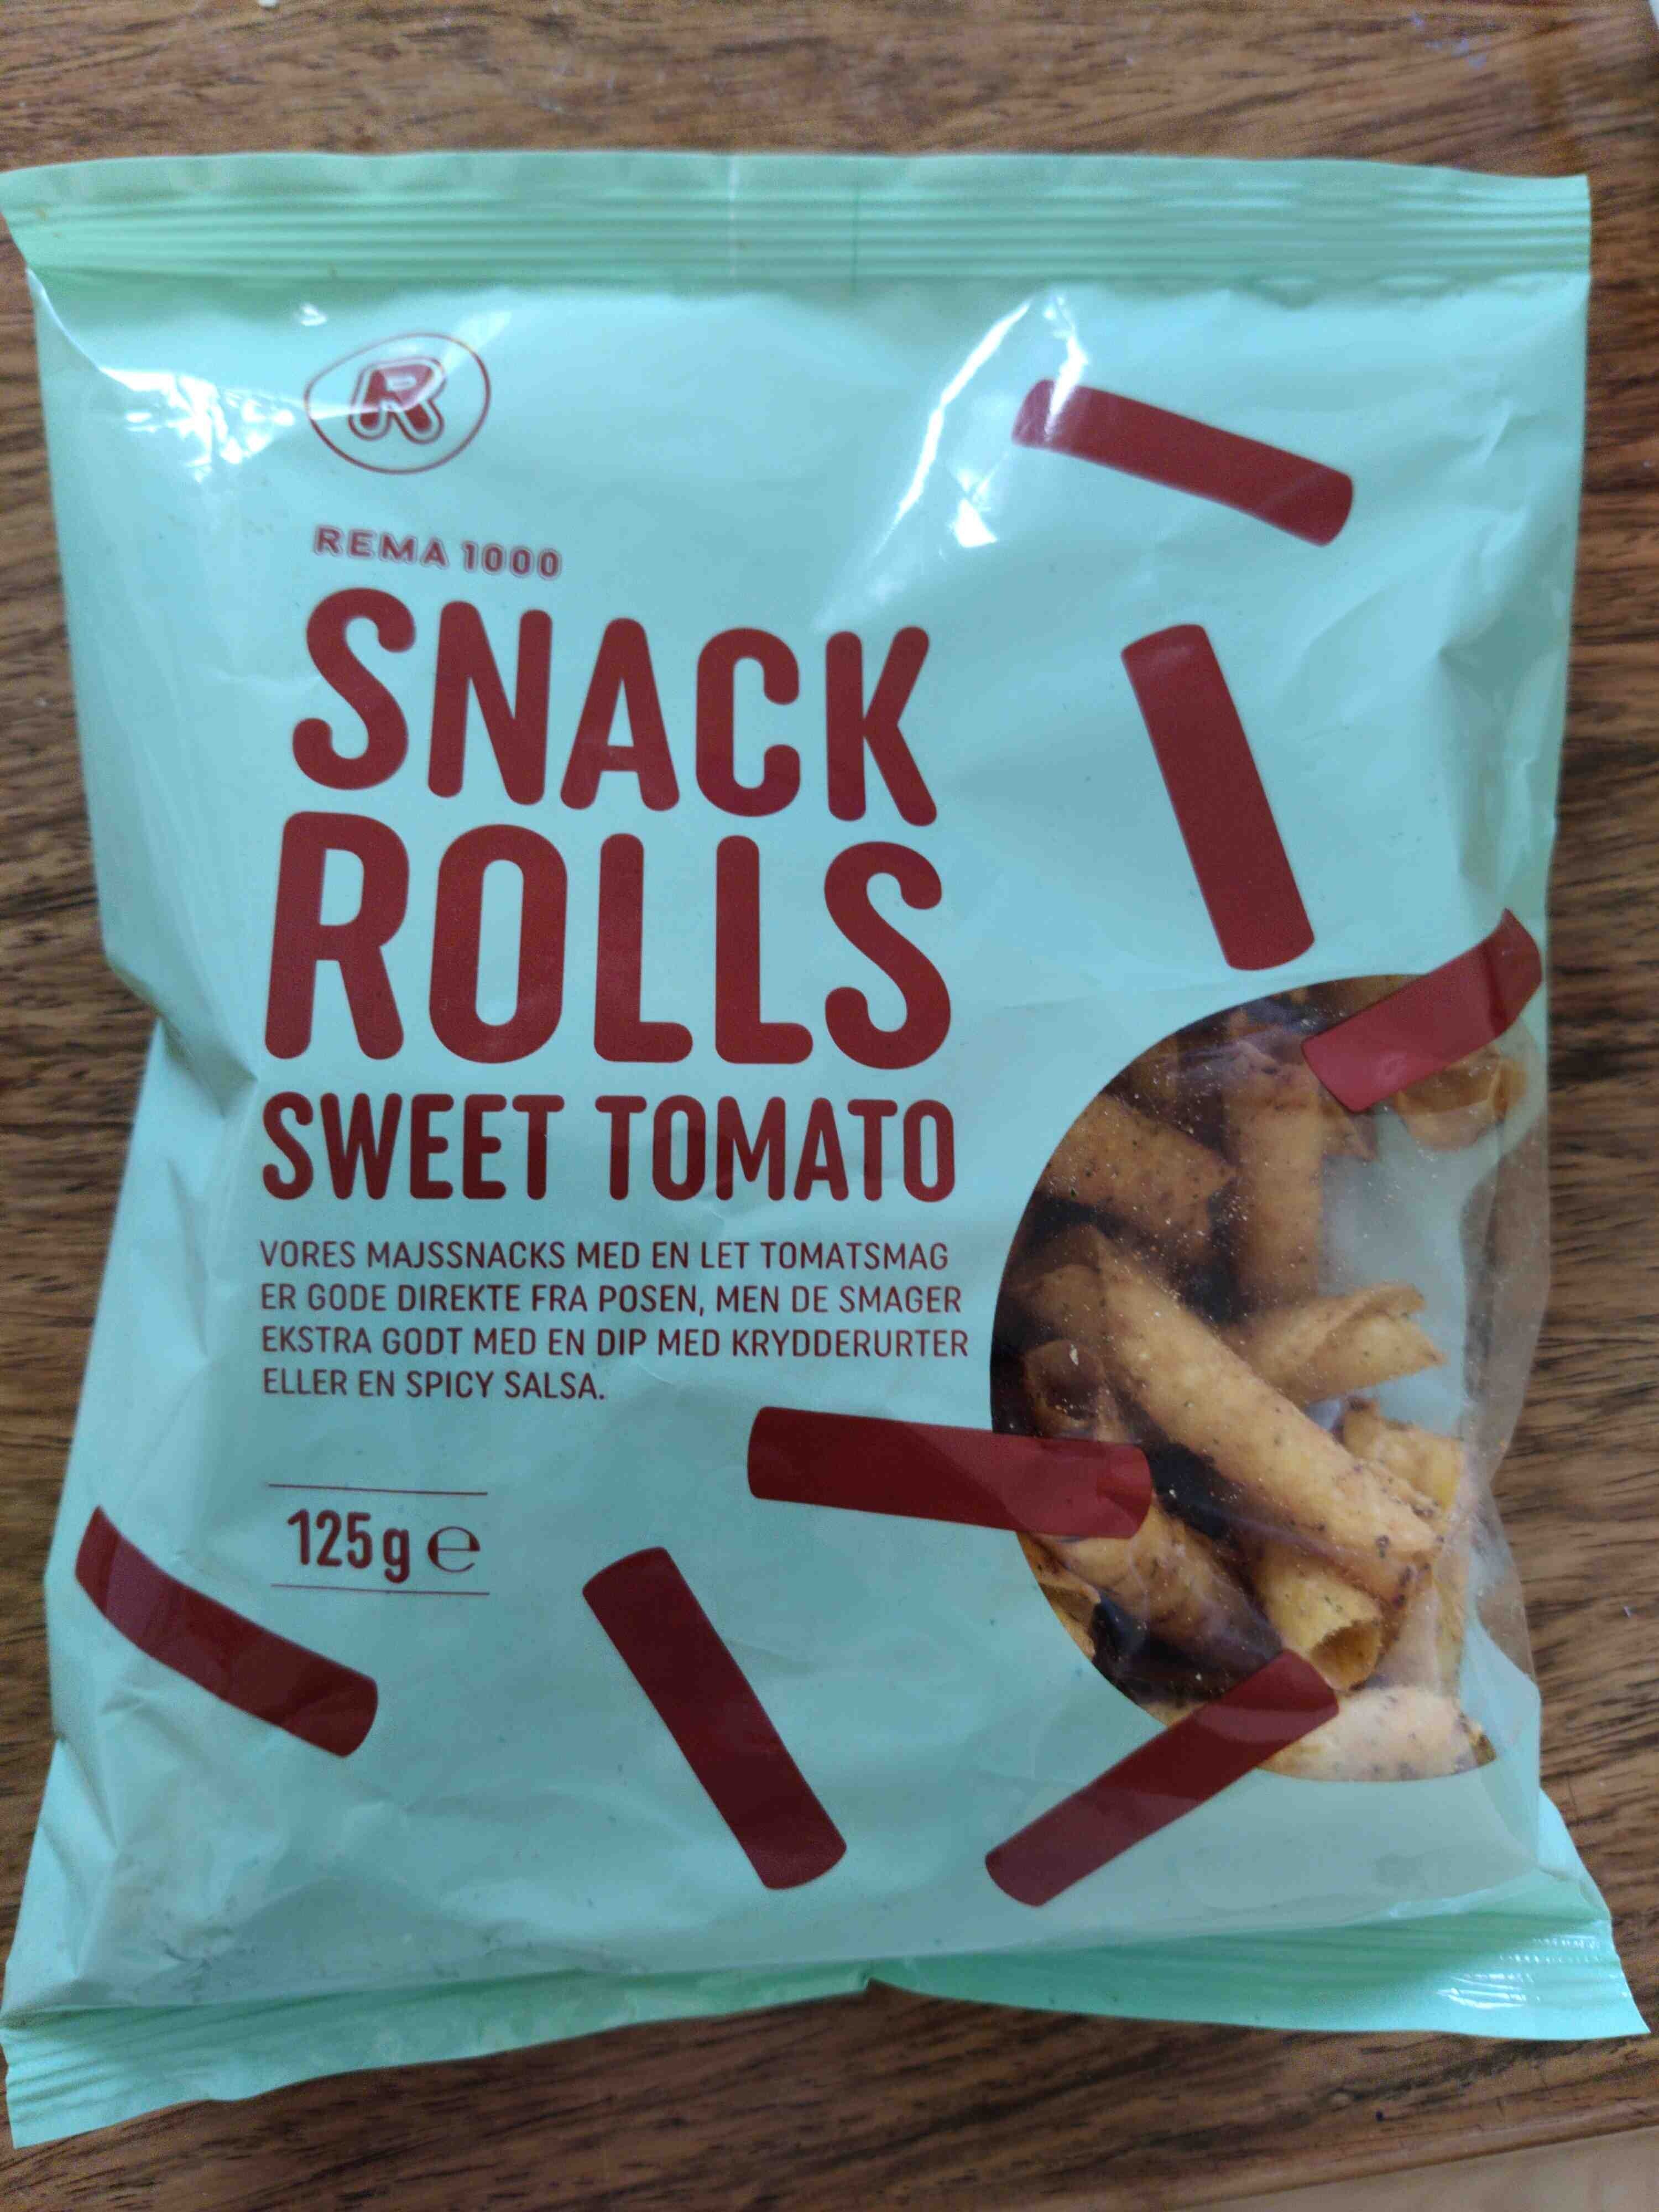 Snack rolls sweet tomato - Produkt - en